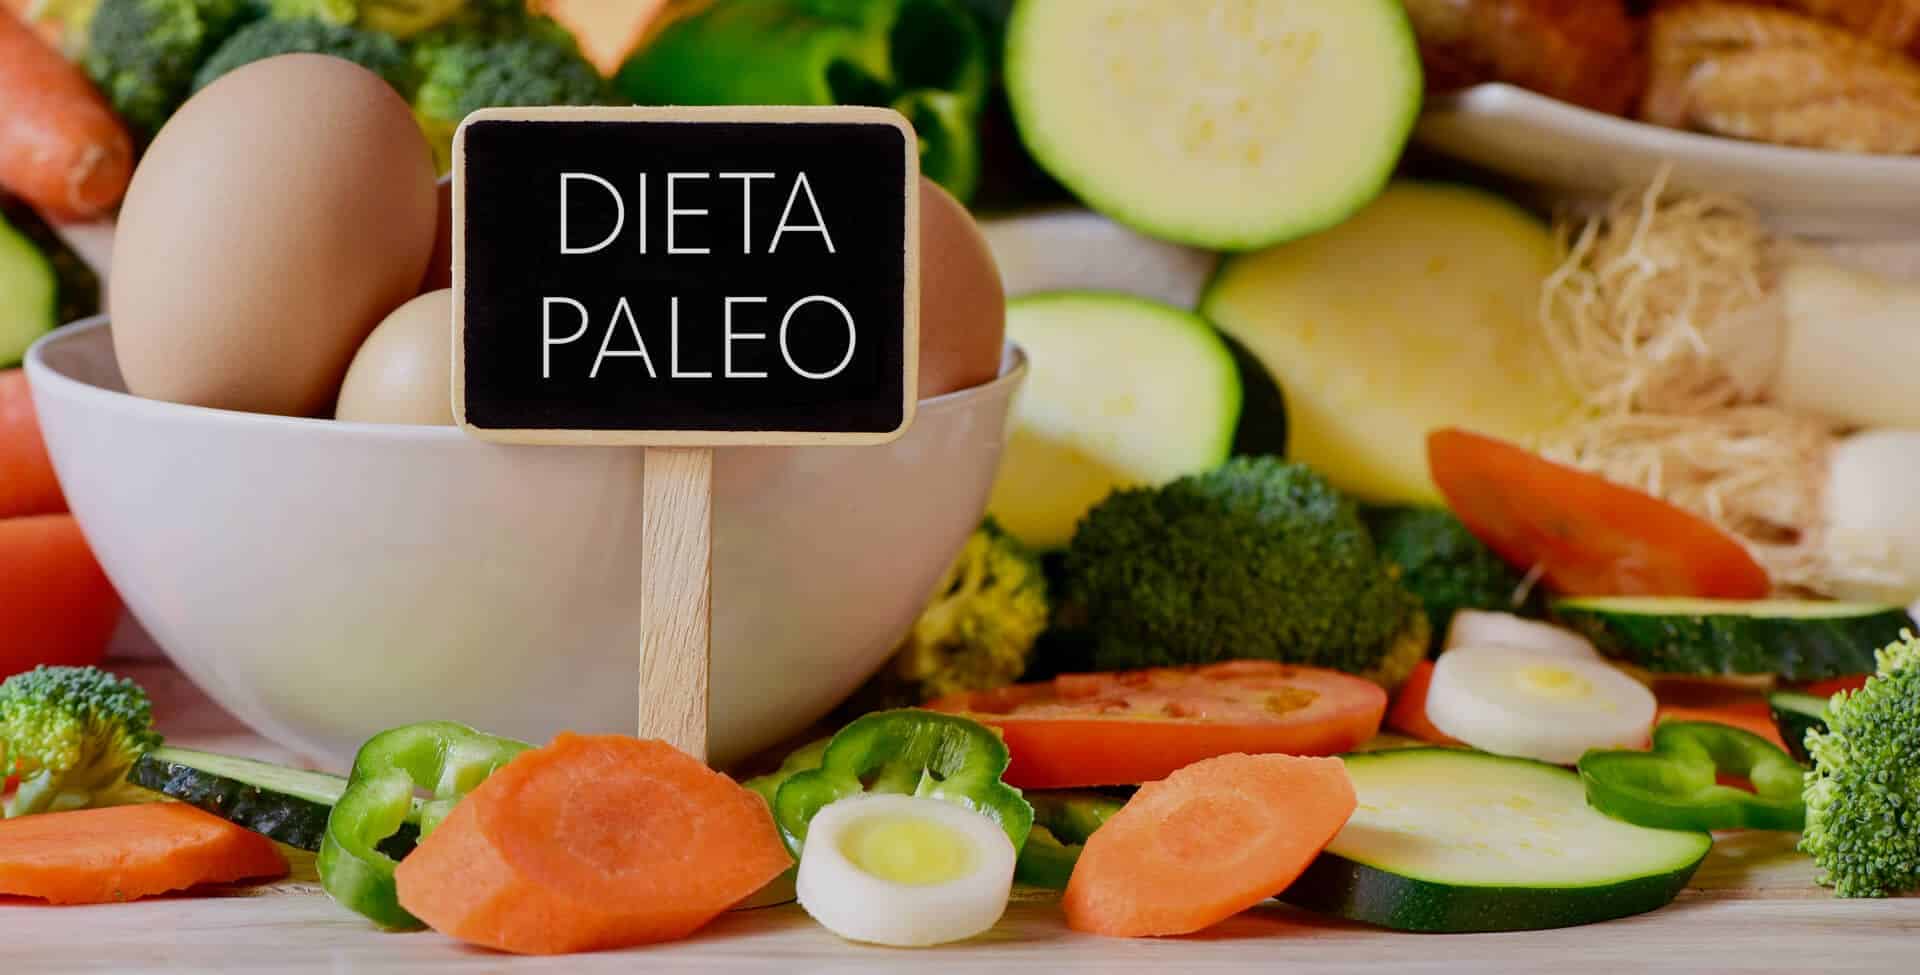 Dieta paleo- Prós e contras, como funciona, restrições e cardápio